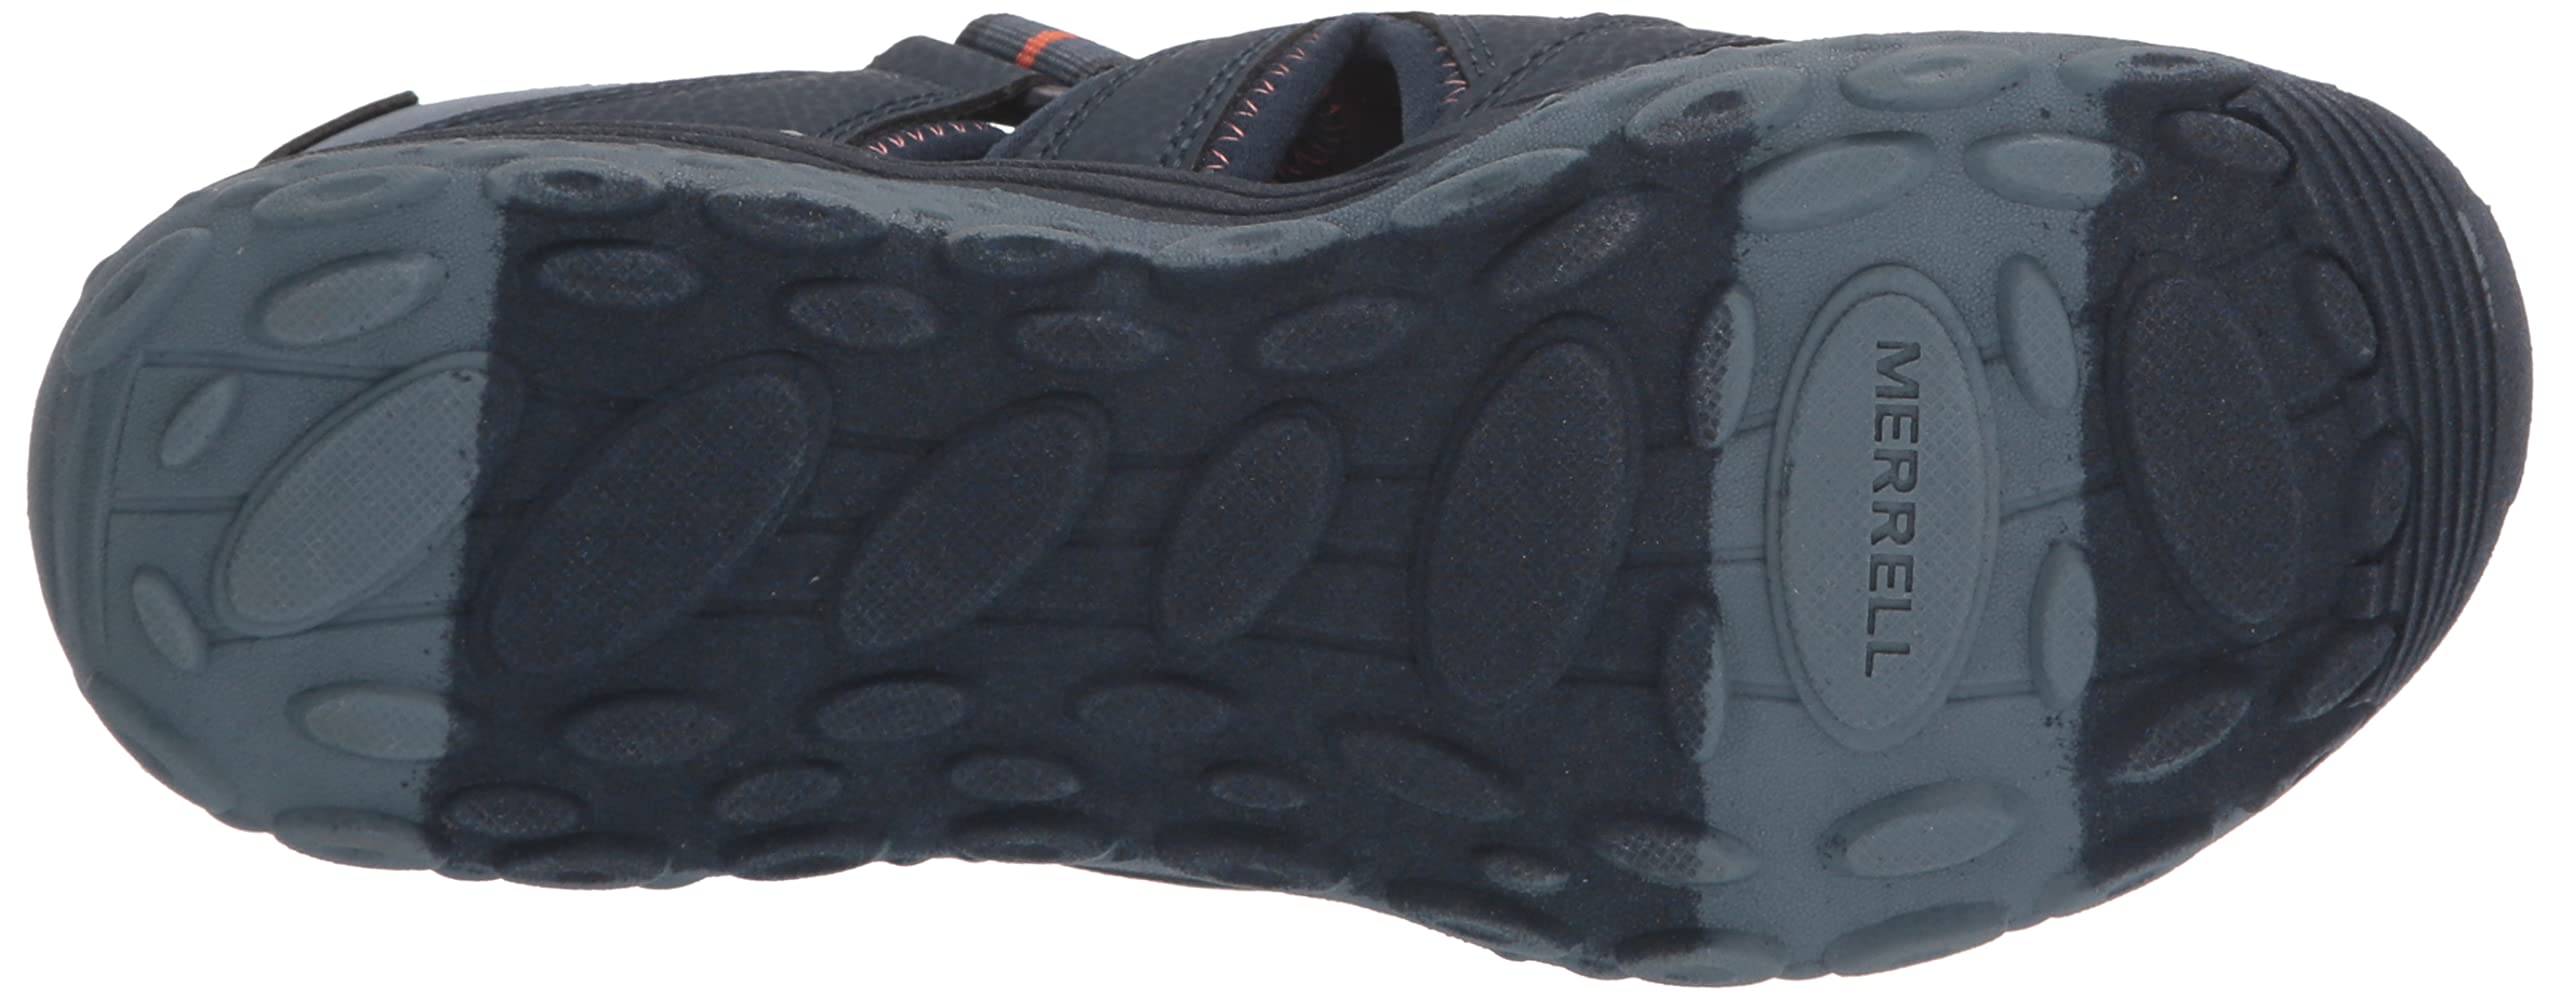 Merrell Unisex-Child Hydro 2 Sport Sandal